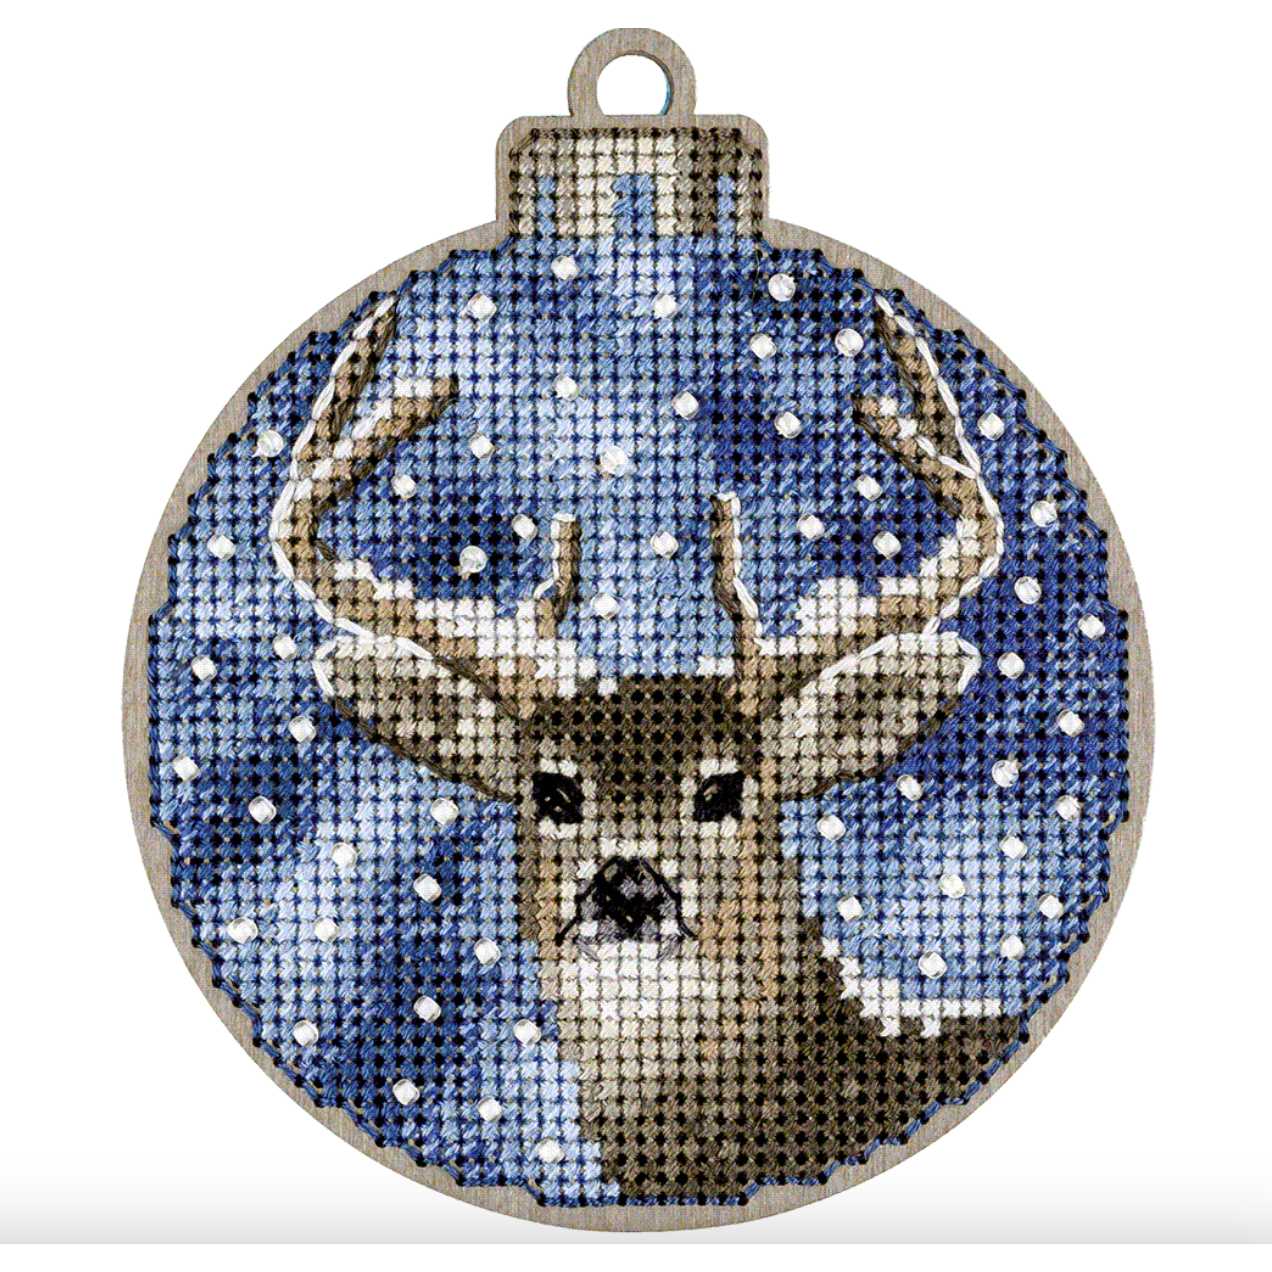 Stitched Ornament Kit 